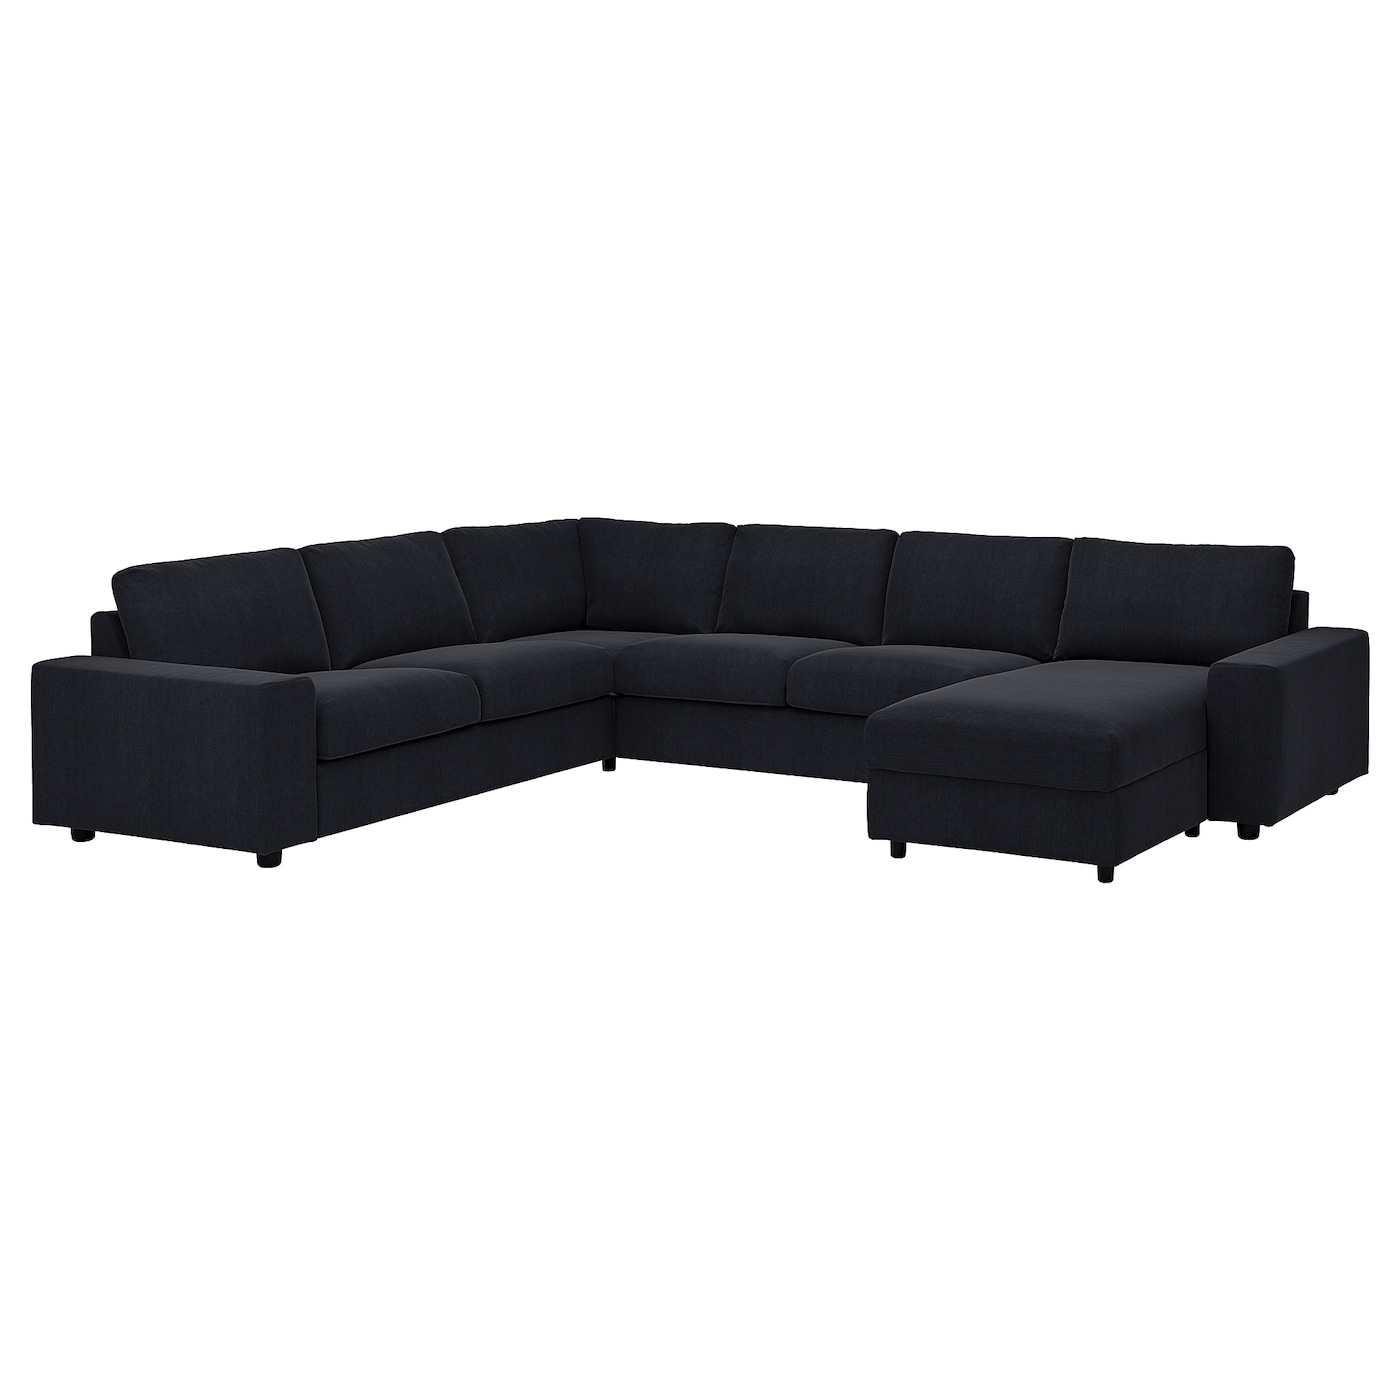 ВИМЛЕ Диван угловой, 5-местный. диван+диван, с широкими подлокотниками/Saxemara черно-синий VIMLE IKEA диван диван ру викс textile light